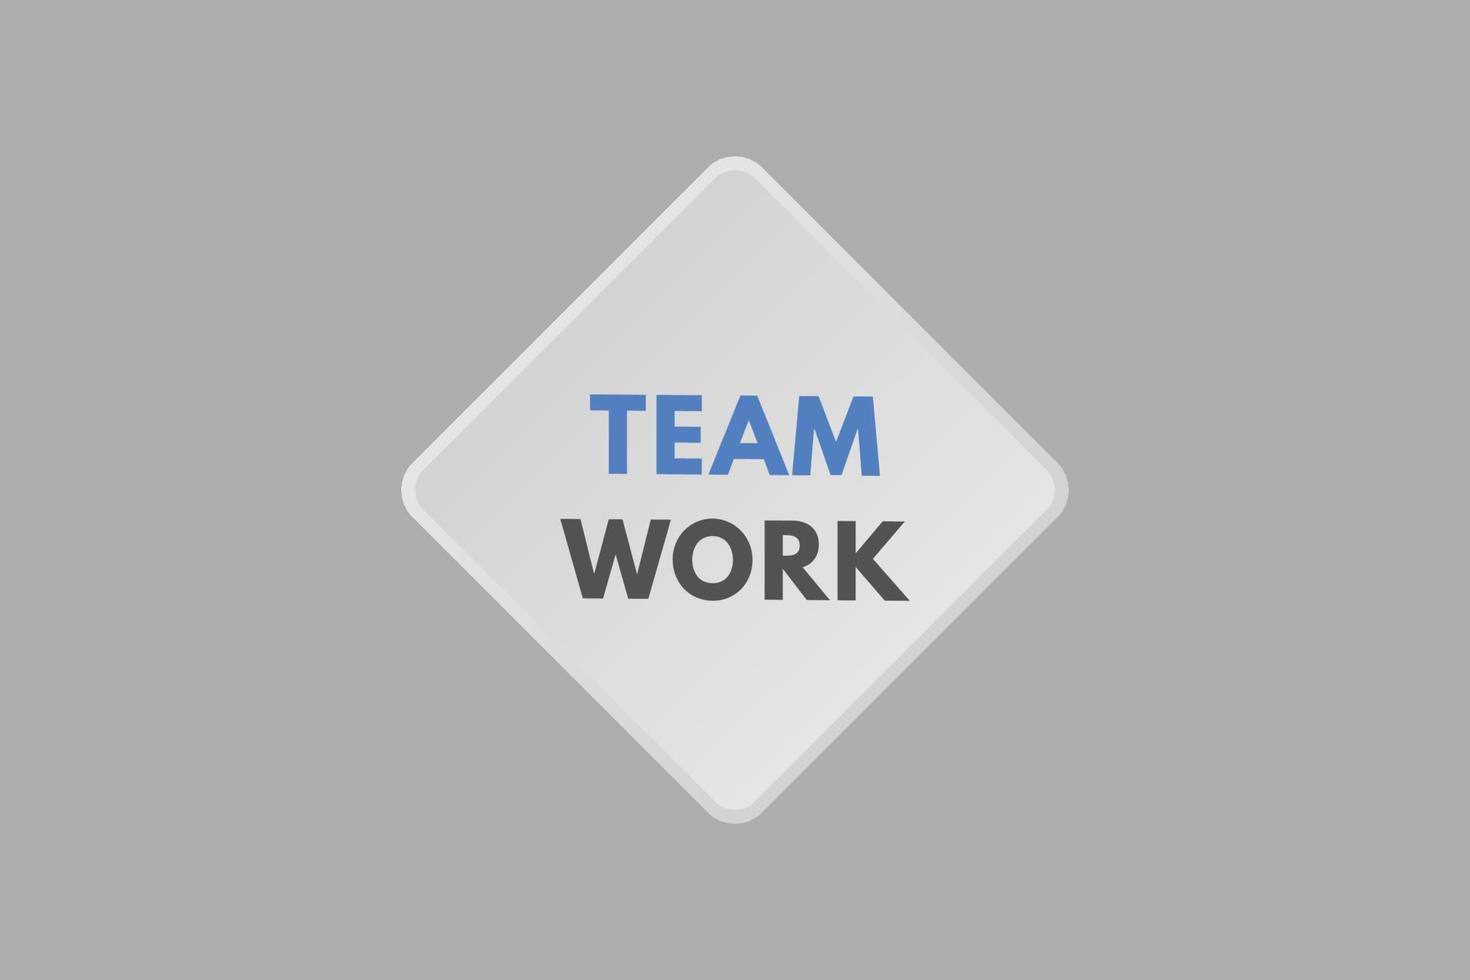 bouton de texte de travail d'équipe. travail d'équipe signe icône étiquette autocollant web boutons vecteur